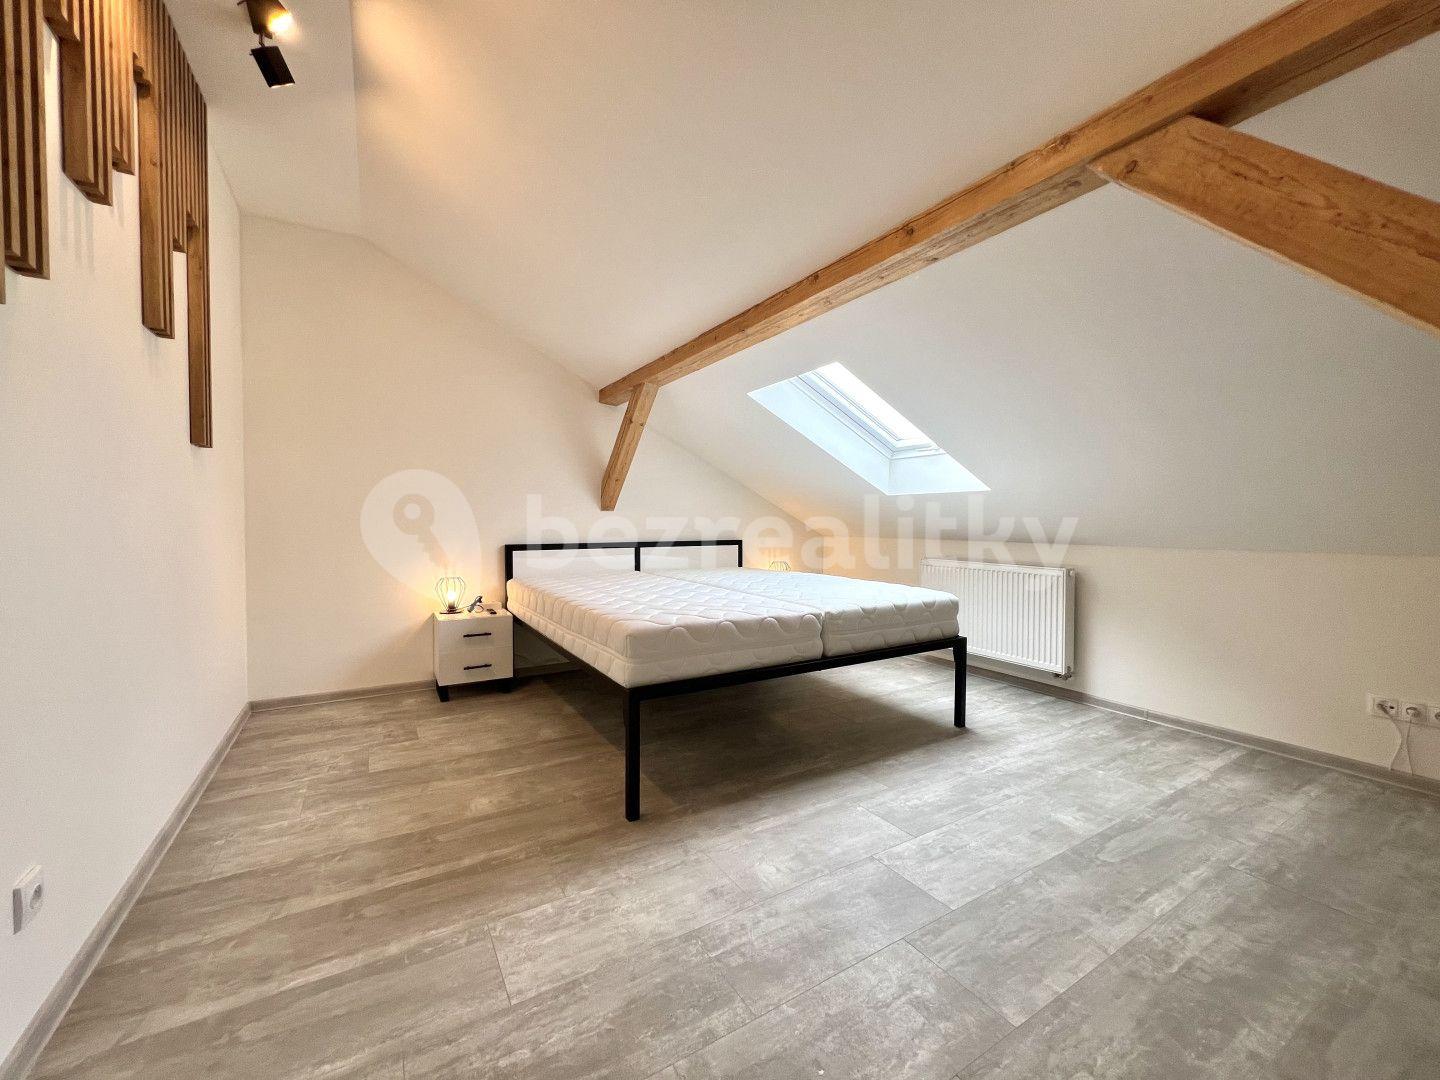 2 bedroom with open-plan kitchen flat for sale, 76 m², Třeboň, Jihočeský Region